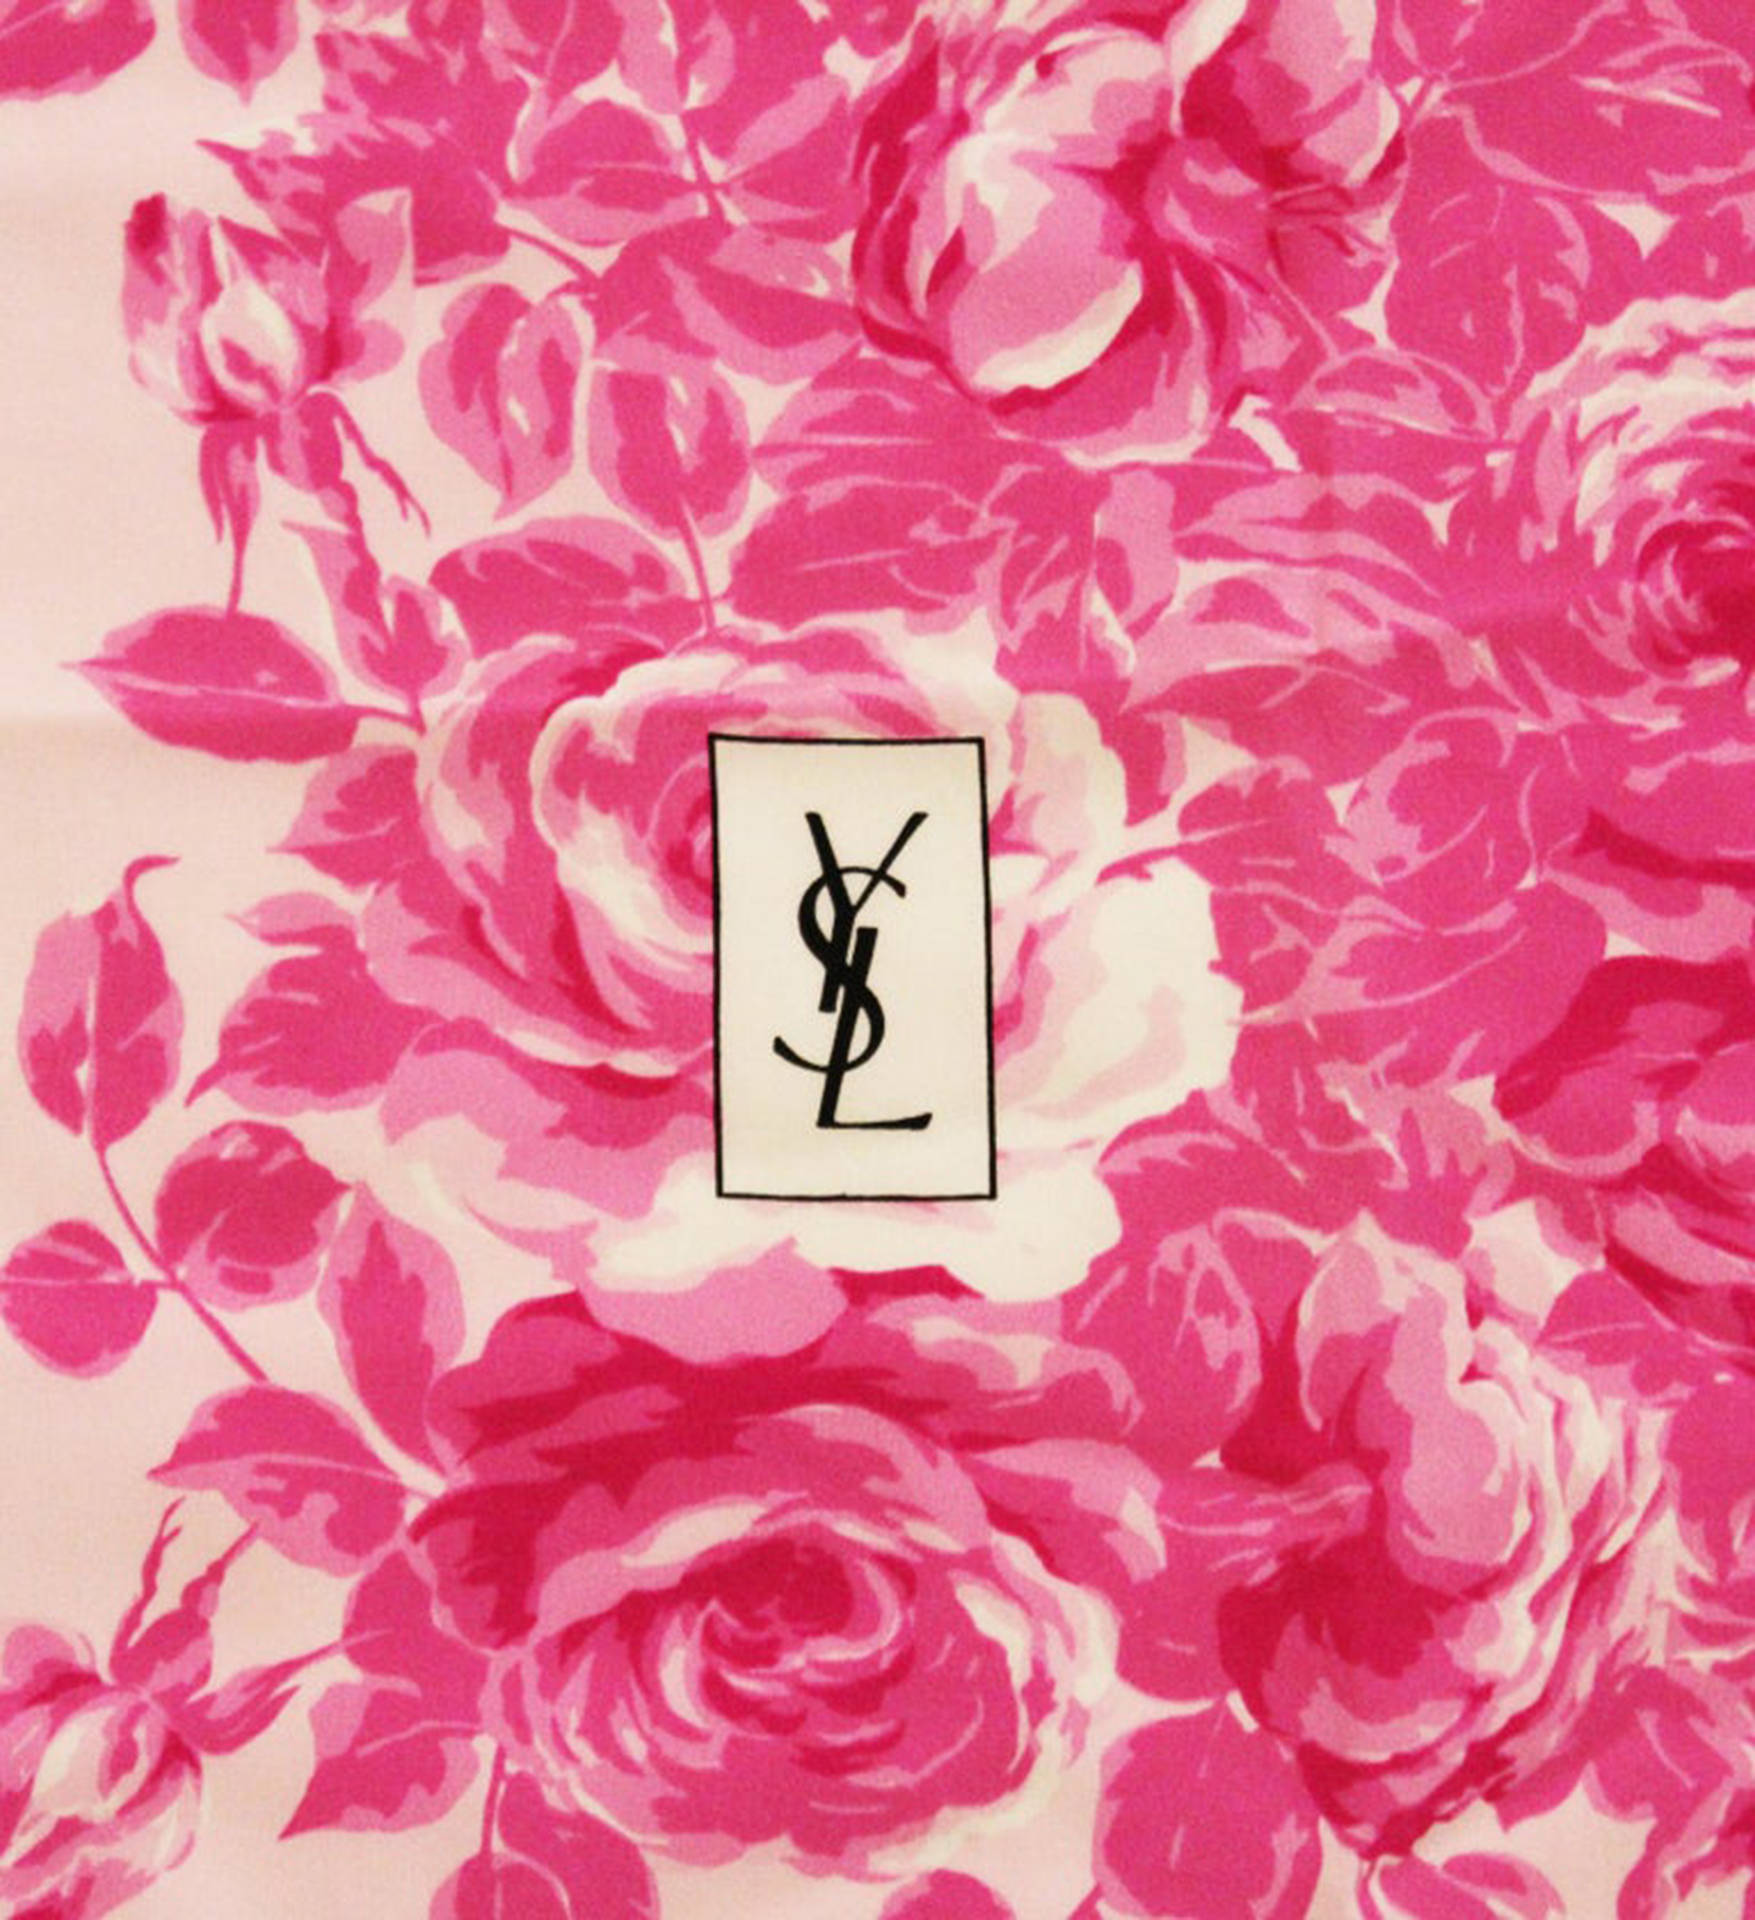 Ysl Logo Rose Scarf